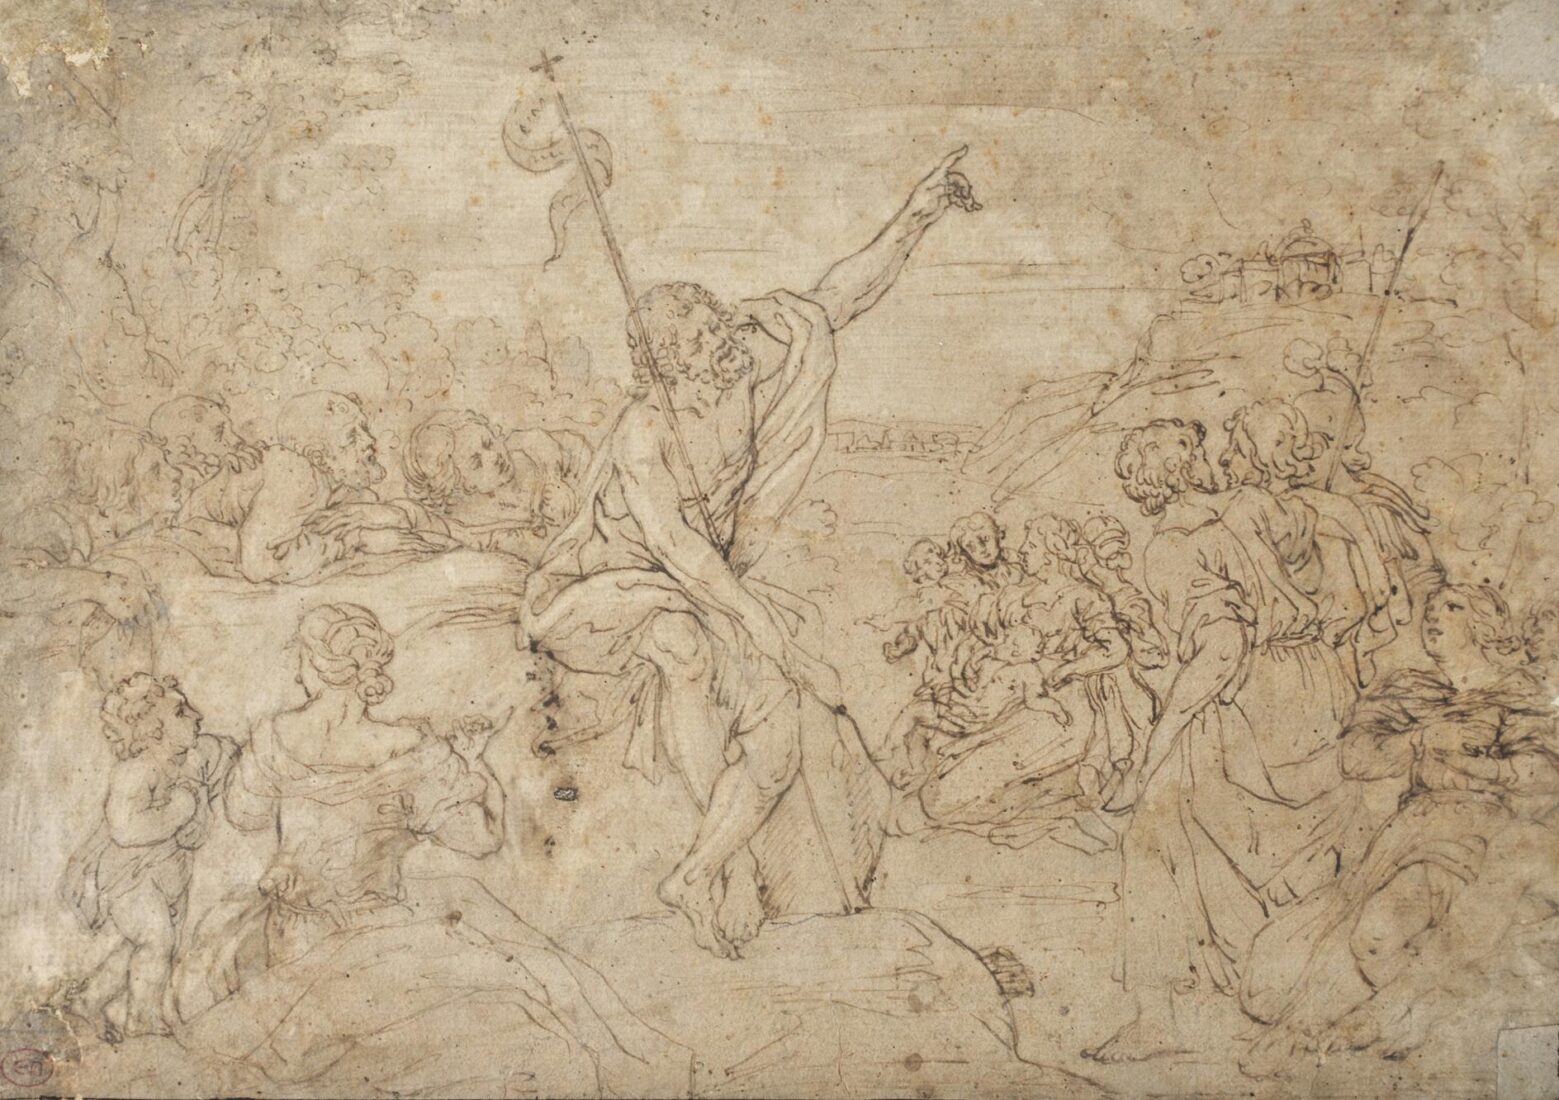 Ο Ιωάννης ο Πρόδρομος κηρύσσει στην έρημο - Zampieri (Domenichino) Domenico